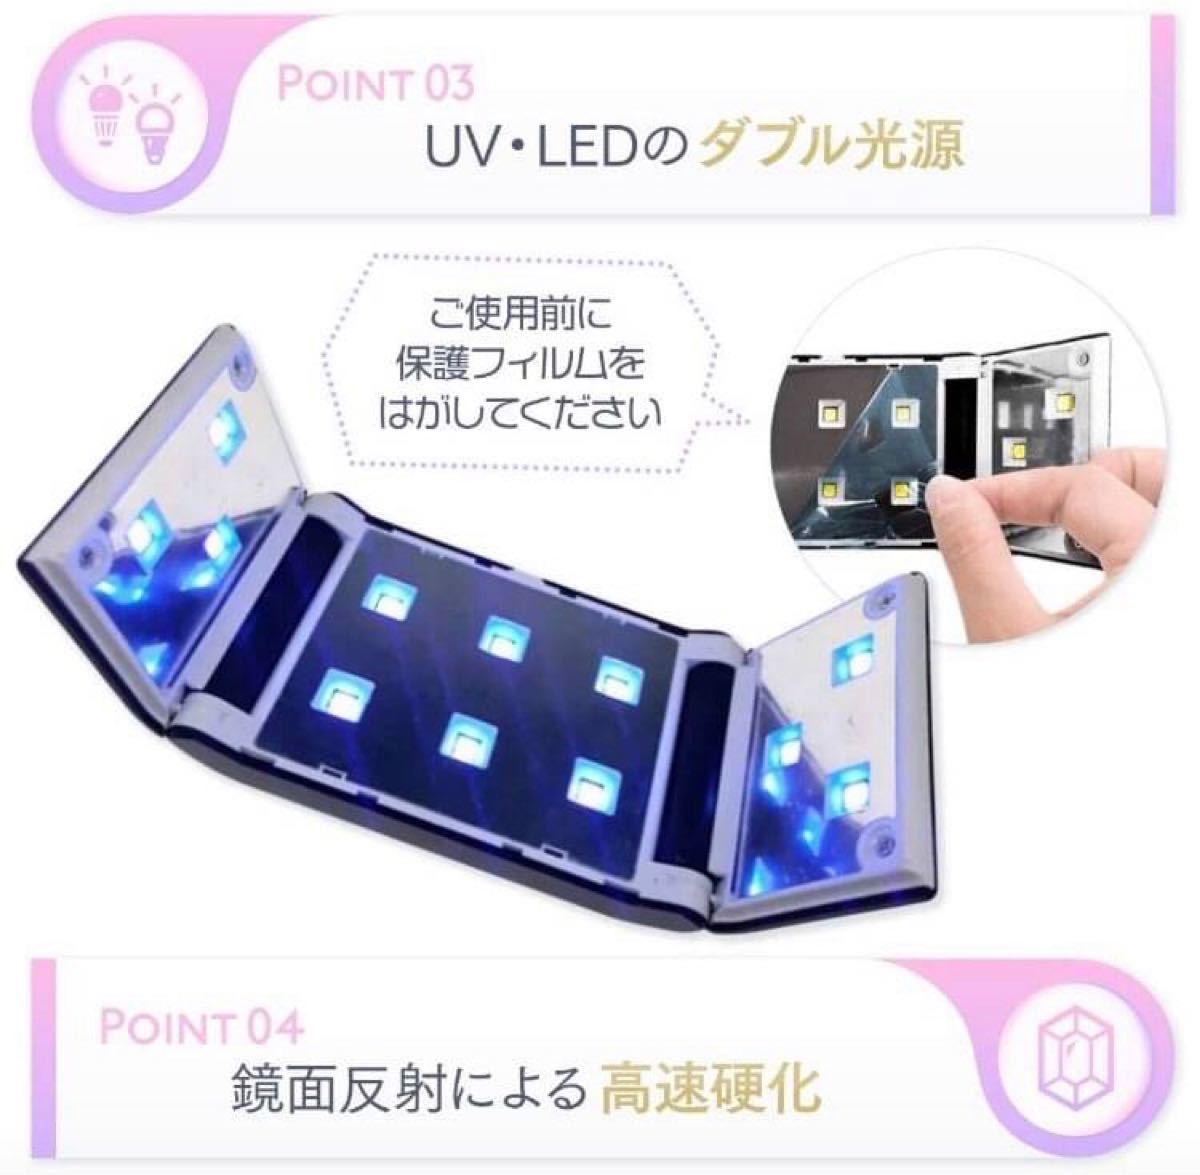 【超コンパクト】UV-LEDライト ジェルネイル UVレジン硬化用ライト 36W